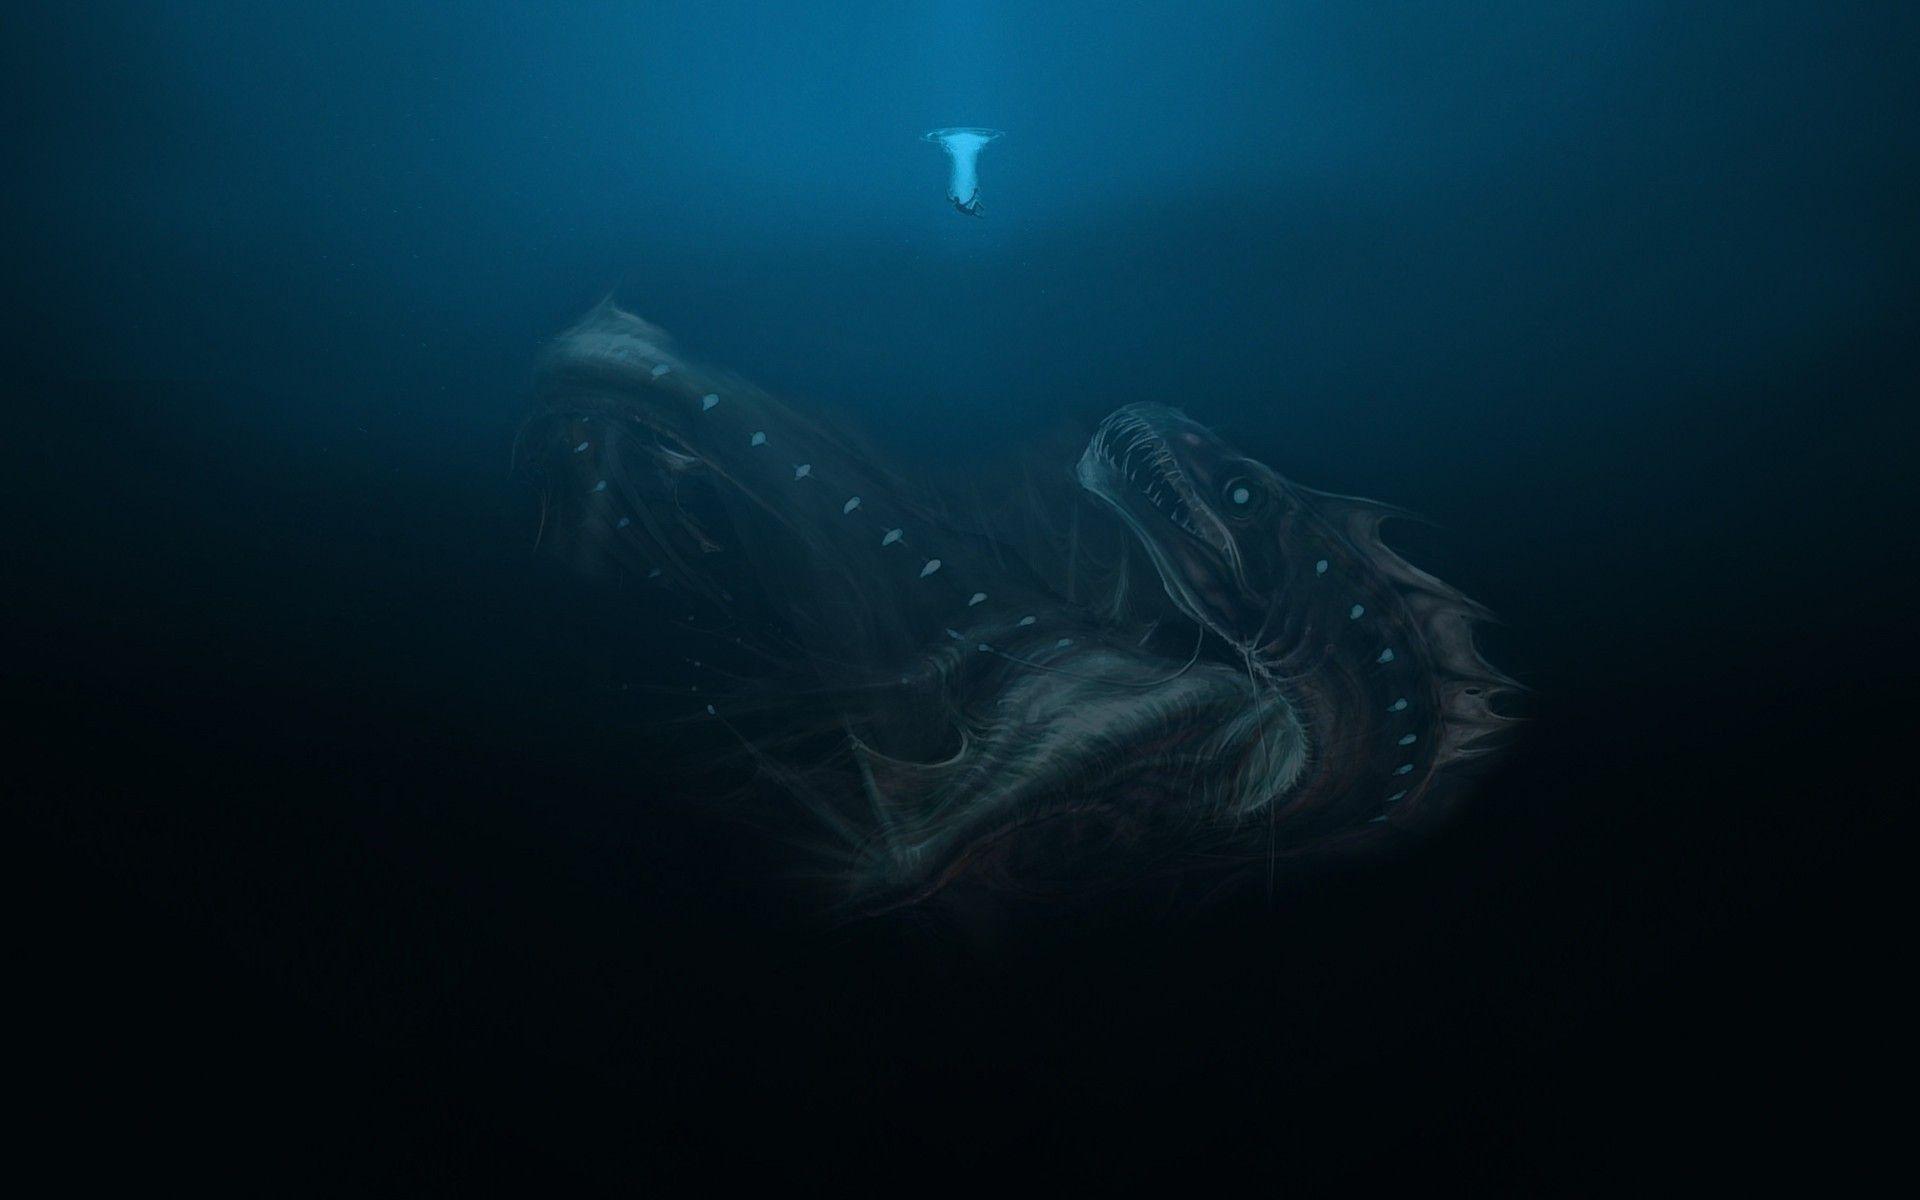 Sinh vật 1920x1200, # biển sâu, # quái vật biển, # dưới nước, # hình nền nghệ thuật huyền ảo.  Nghệ thuật quái vật biển, Quái vật biển, Quái vật đại dương